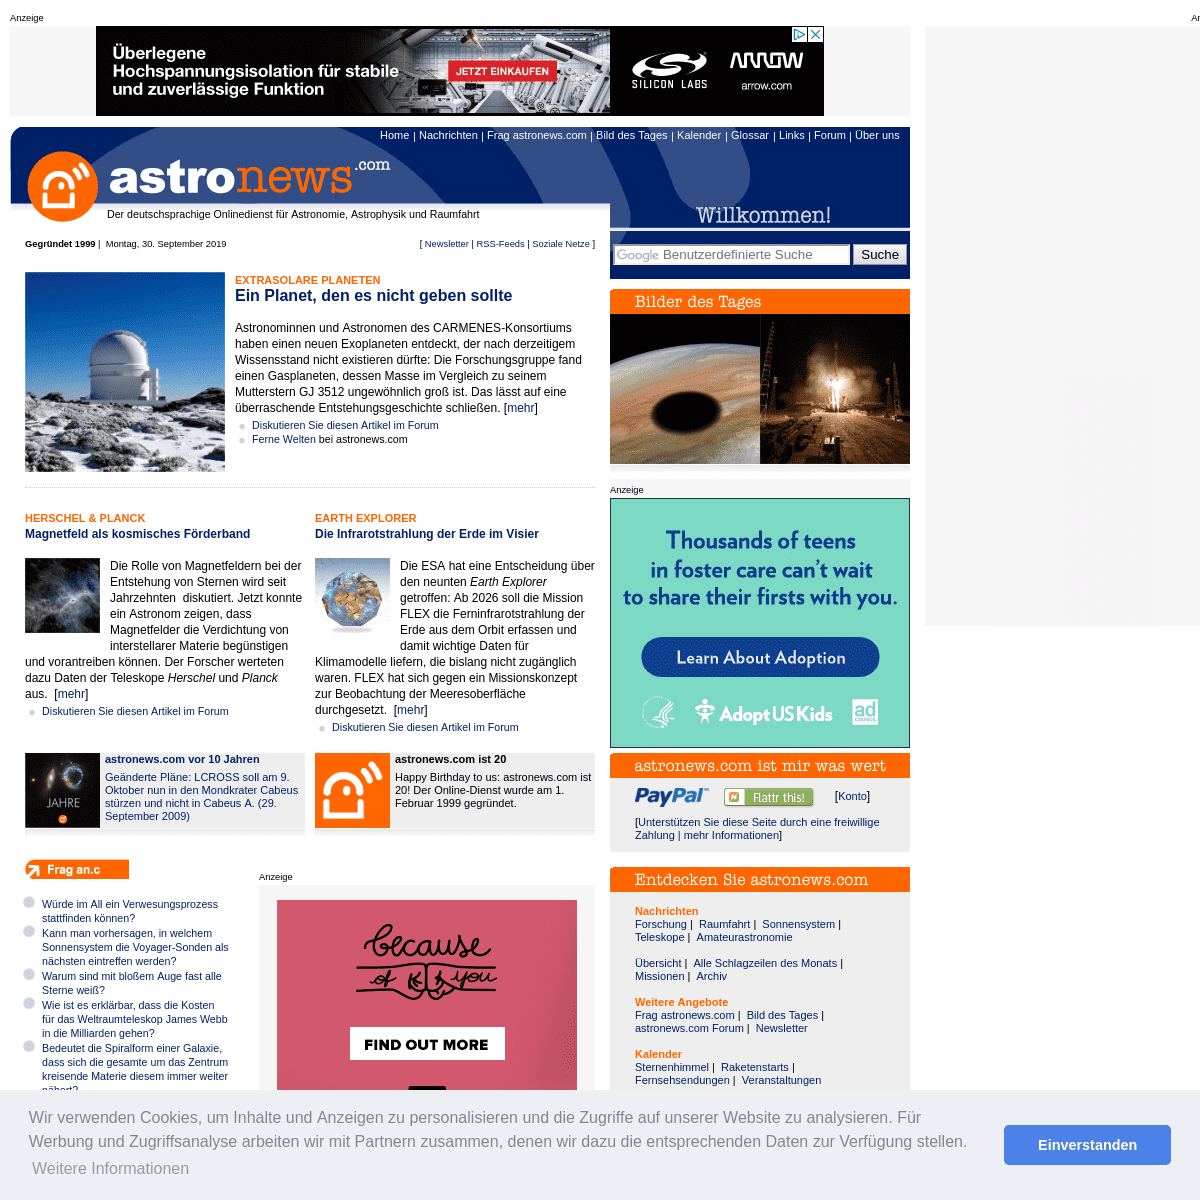 astronews.com - der deutschsprachige Onlinedienst für Astronomie, Astrophysik und Raumfahrt